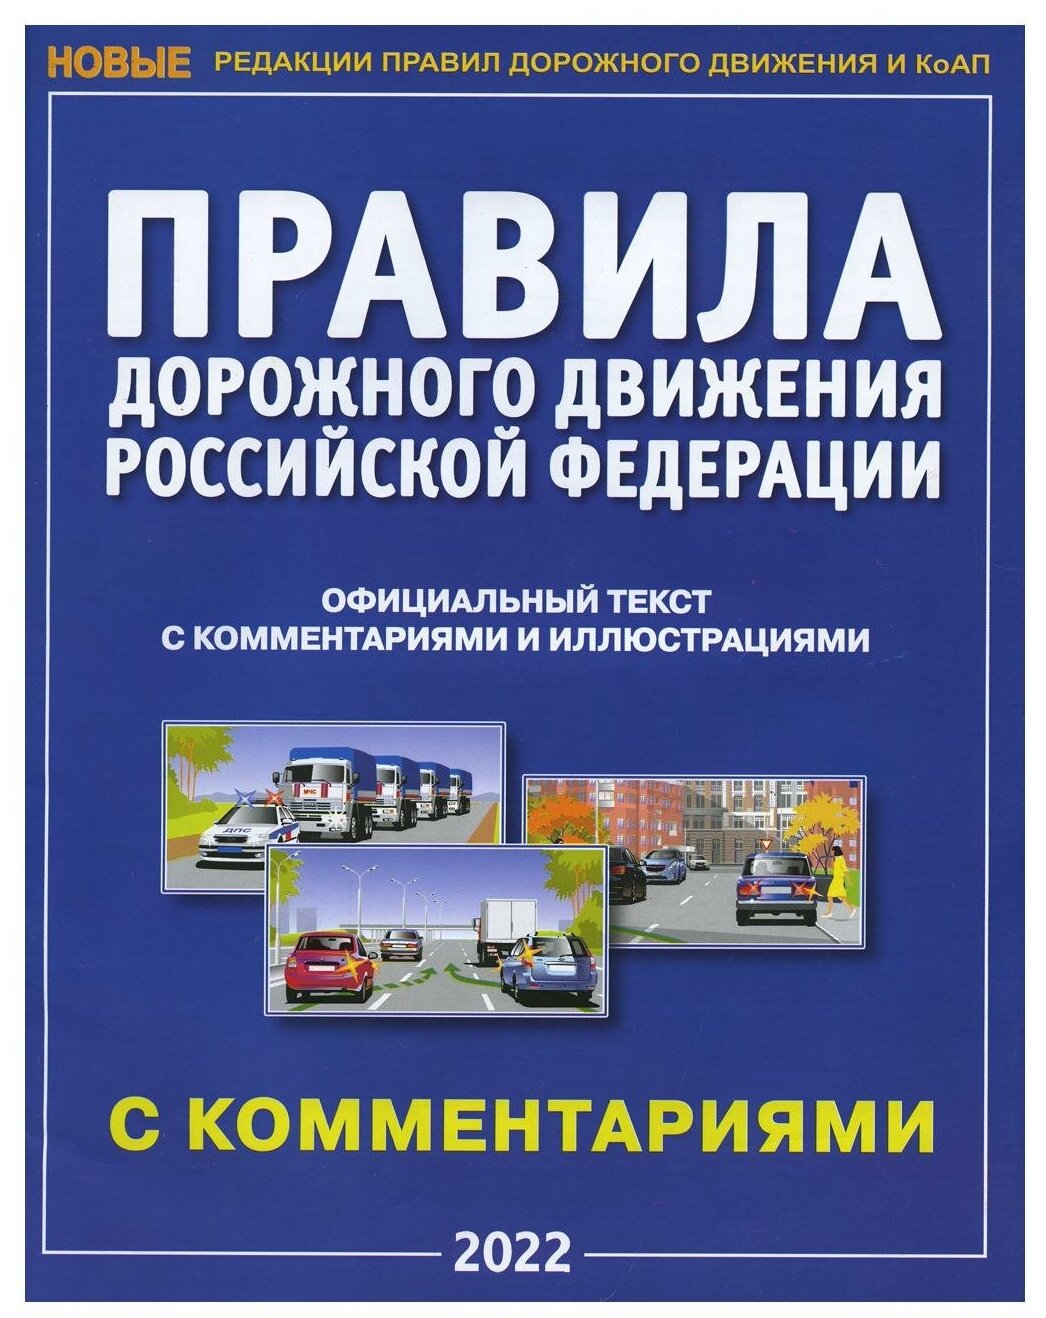 ПДД Правила Дорожного Движения 2022 Российской Федерации официальный текст с комментариями и иллюстрациями